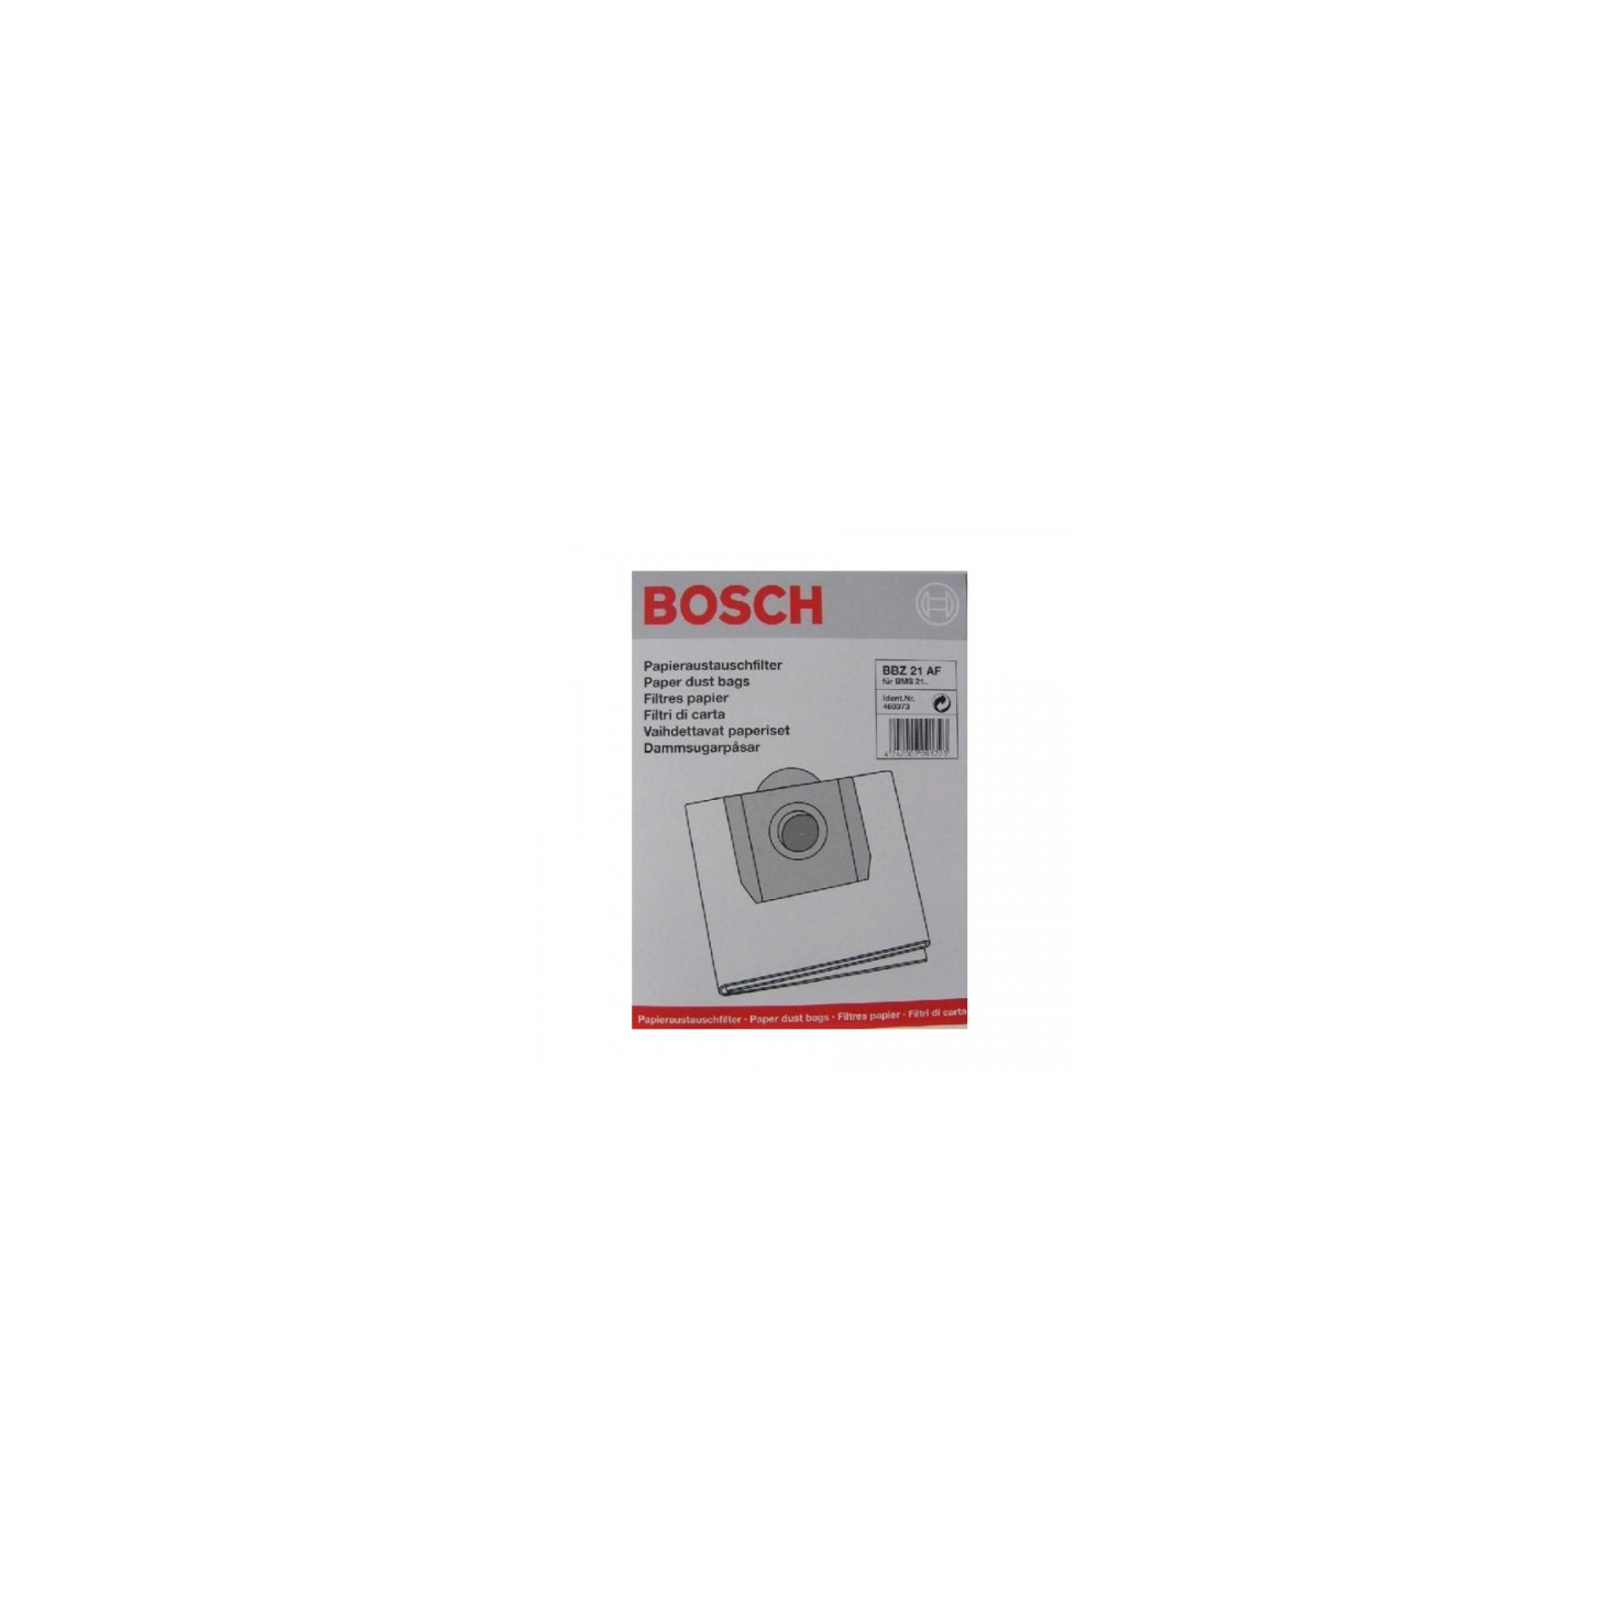 Мешок для пылесоса Bosch BBZ 21 AF (BBZ21AF)